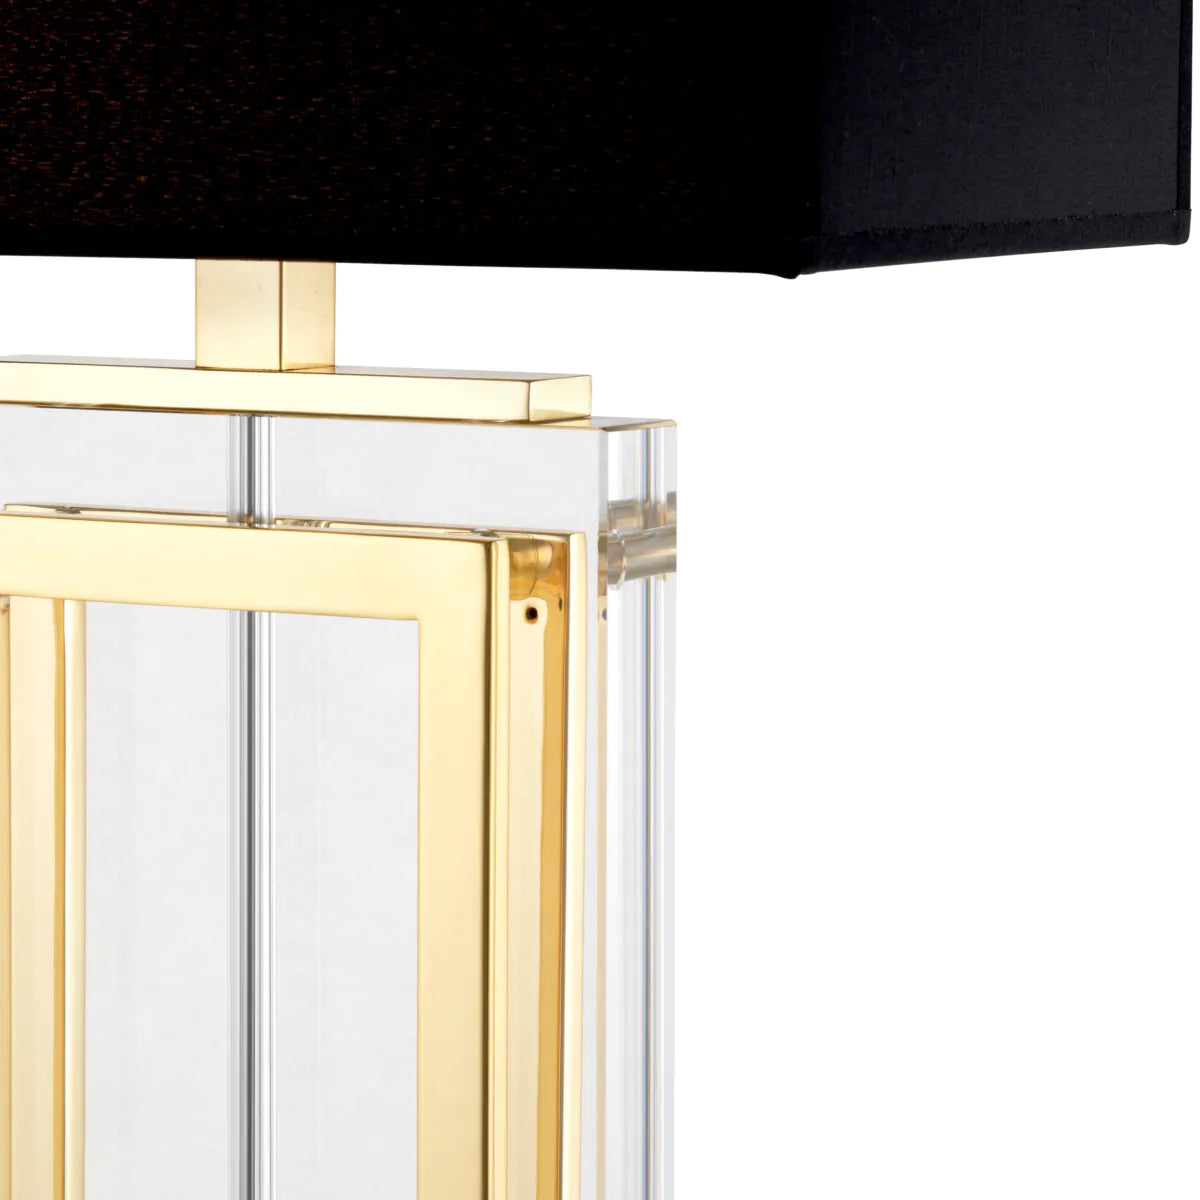 Lampa stołowa ARLINGTON CRYSTAL czarny ze złotym wykończeniem Eichholtz    Eye on Design